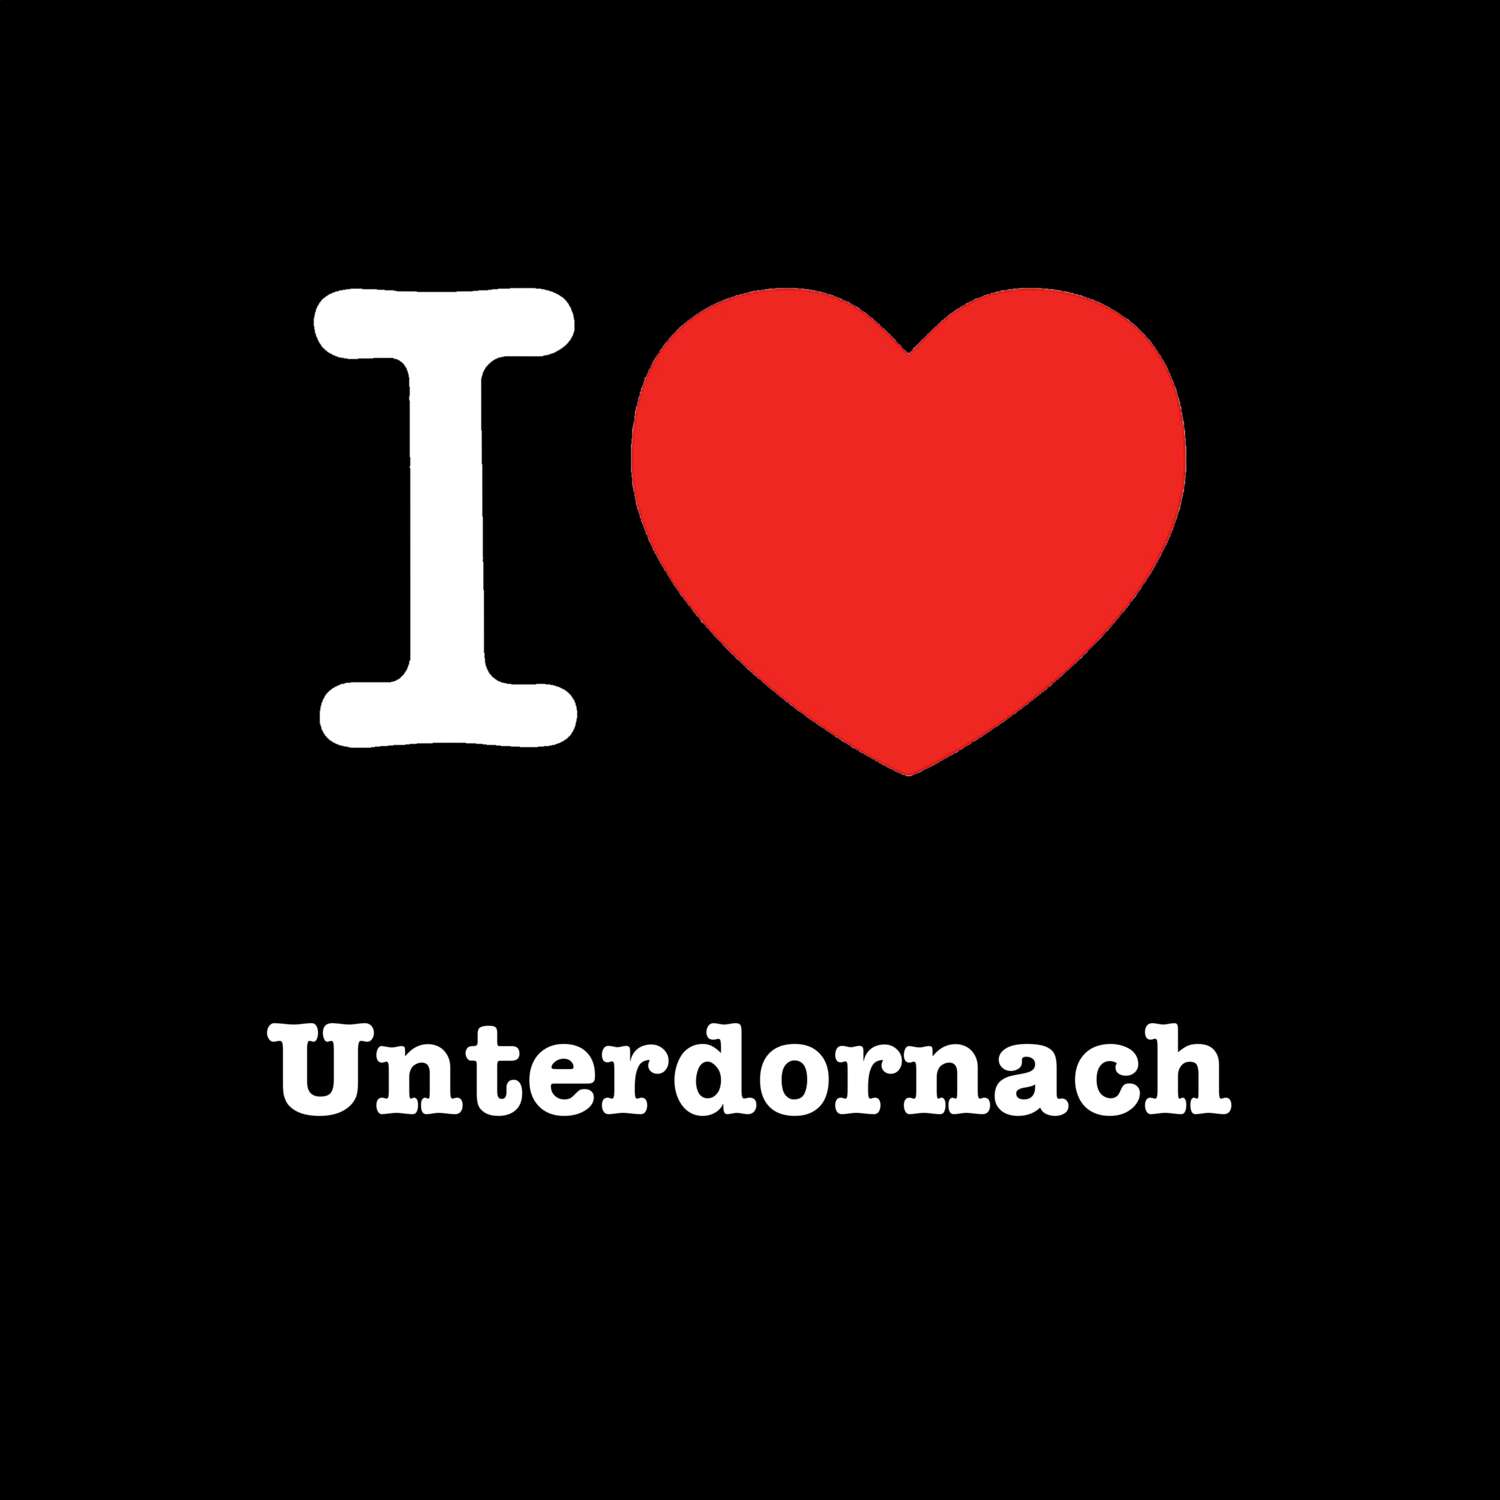 Unterdornach T-Shirt »I love«